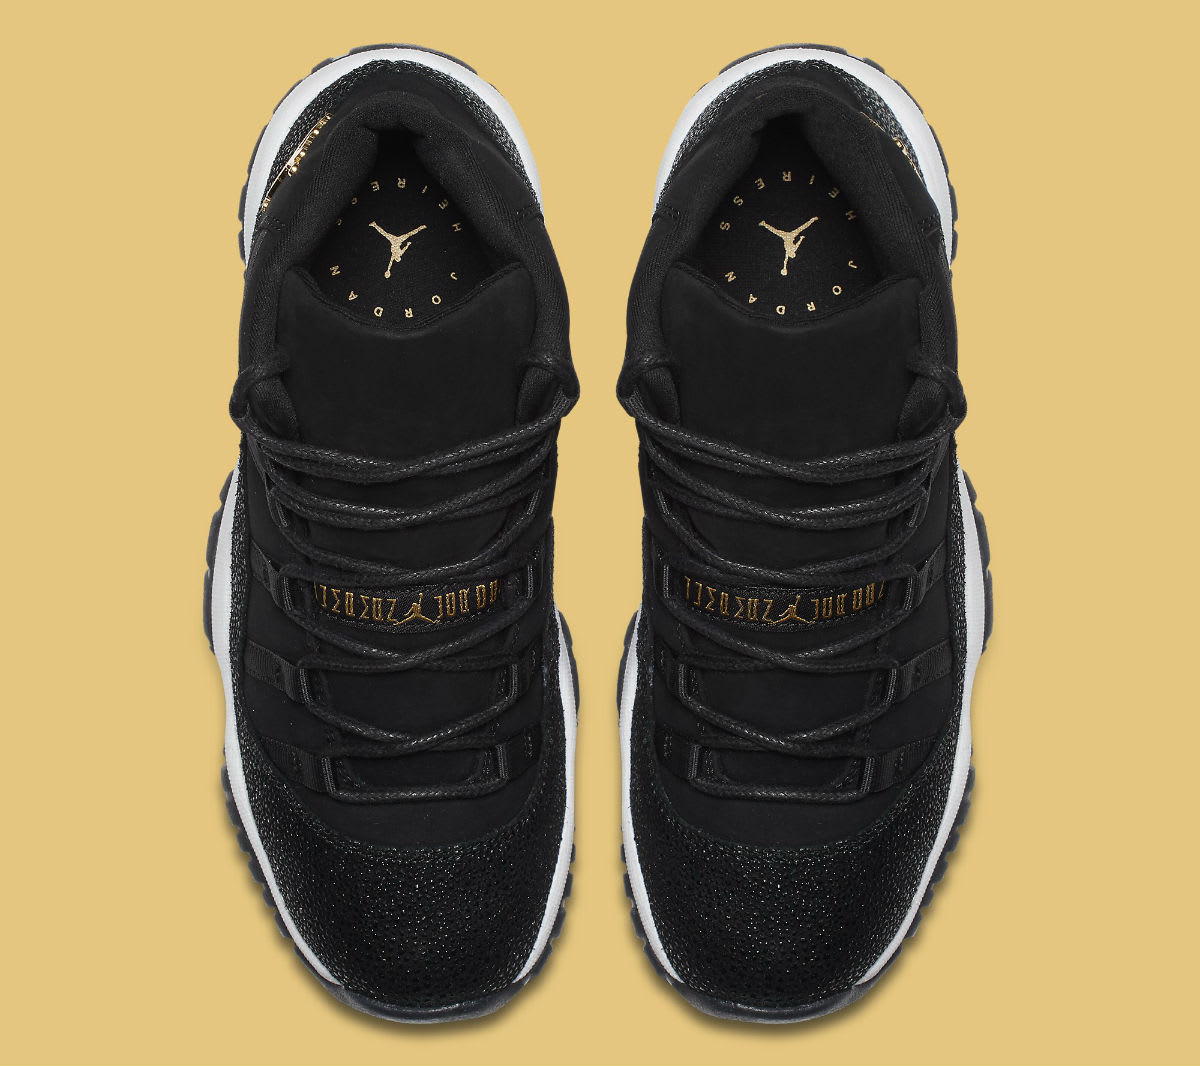 Air Jordan 11 XI Heiress Black Release Date 852625-030 Top